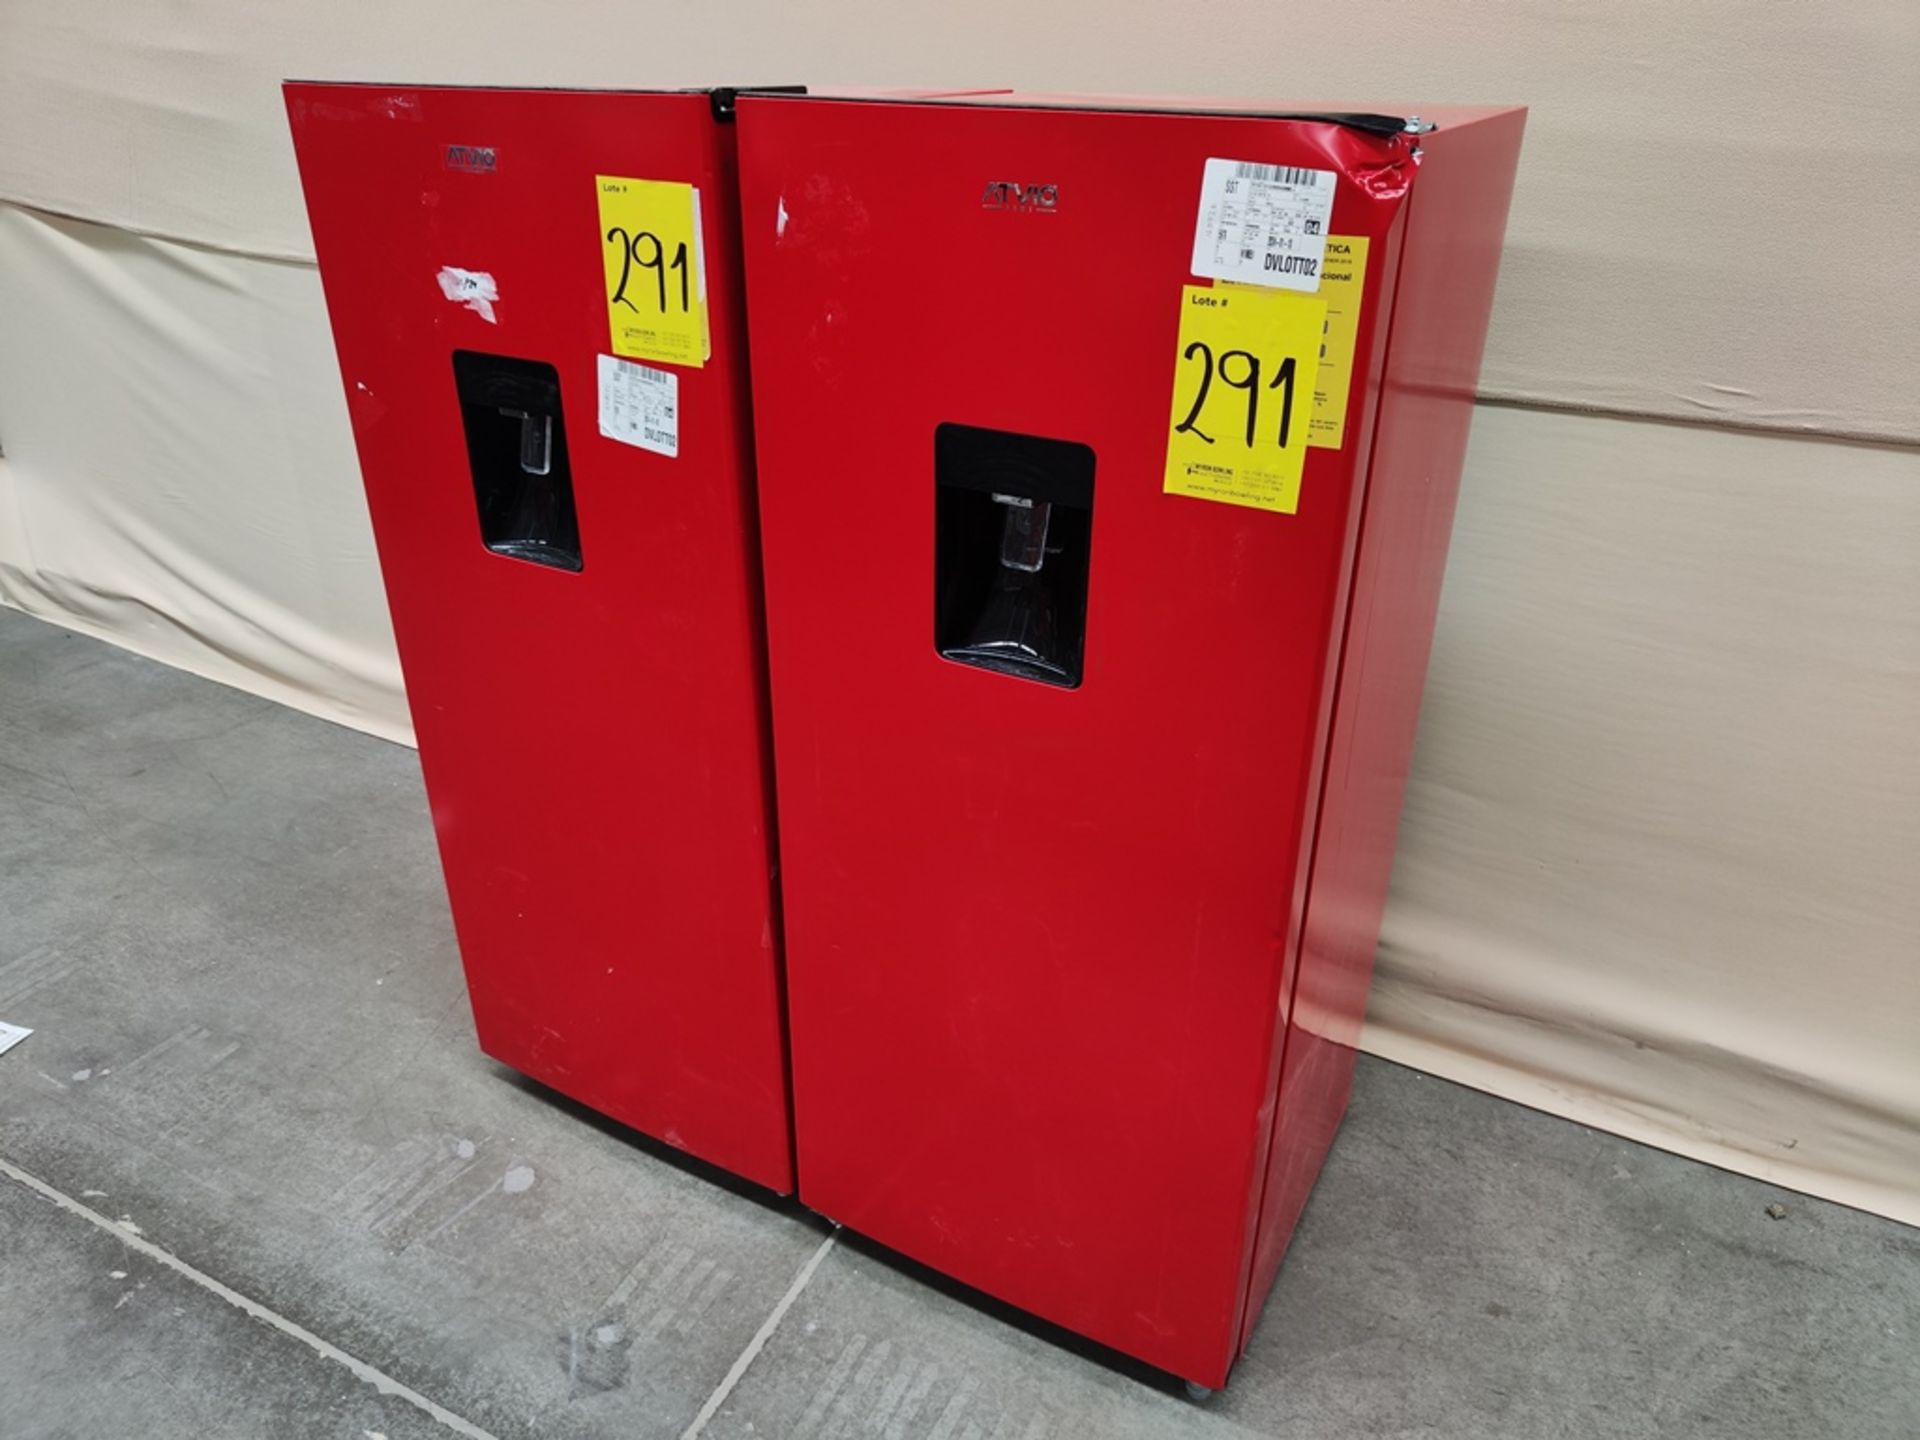 Lote de 2 refrigeradores contiene: Refrigerador con dispensador de agua Marca ATVIO, Modelo AT66URR - Image 4 of 7